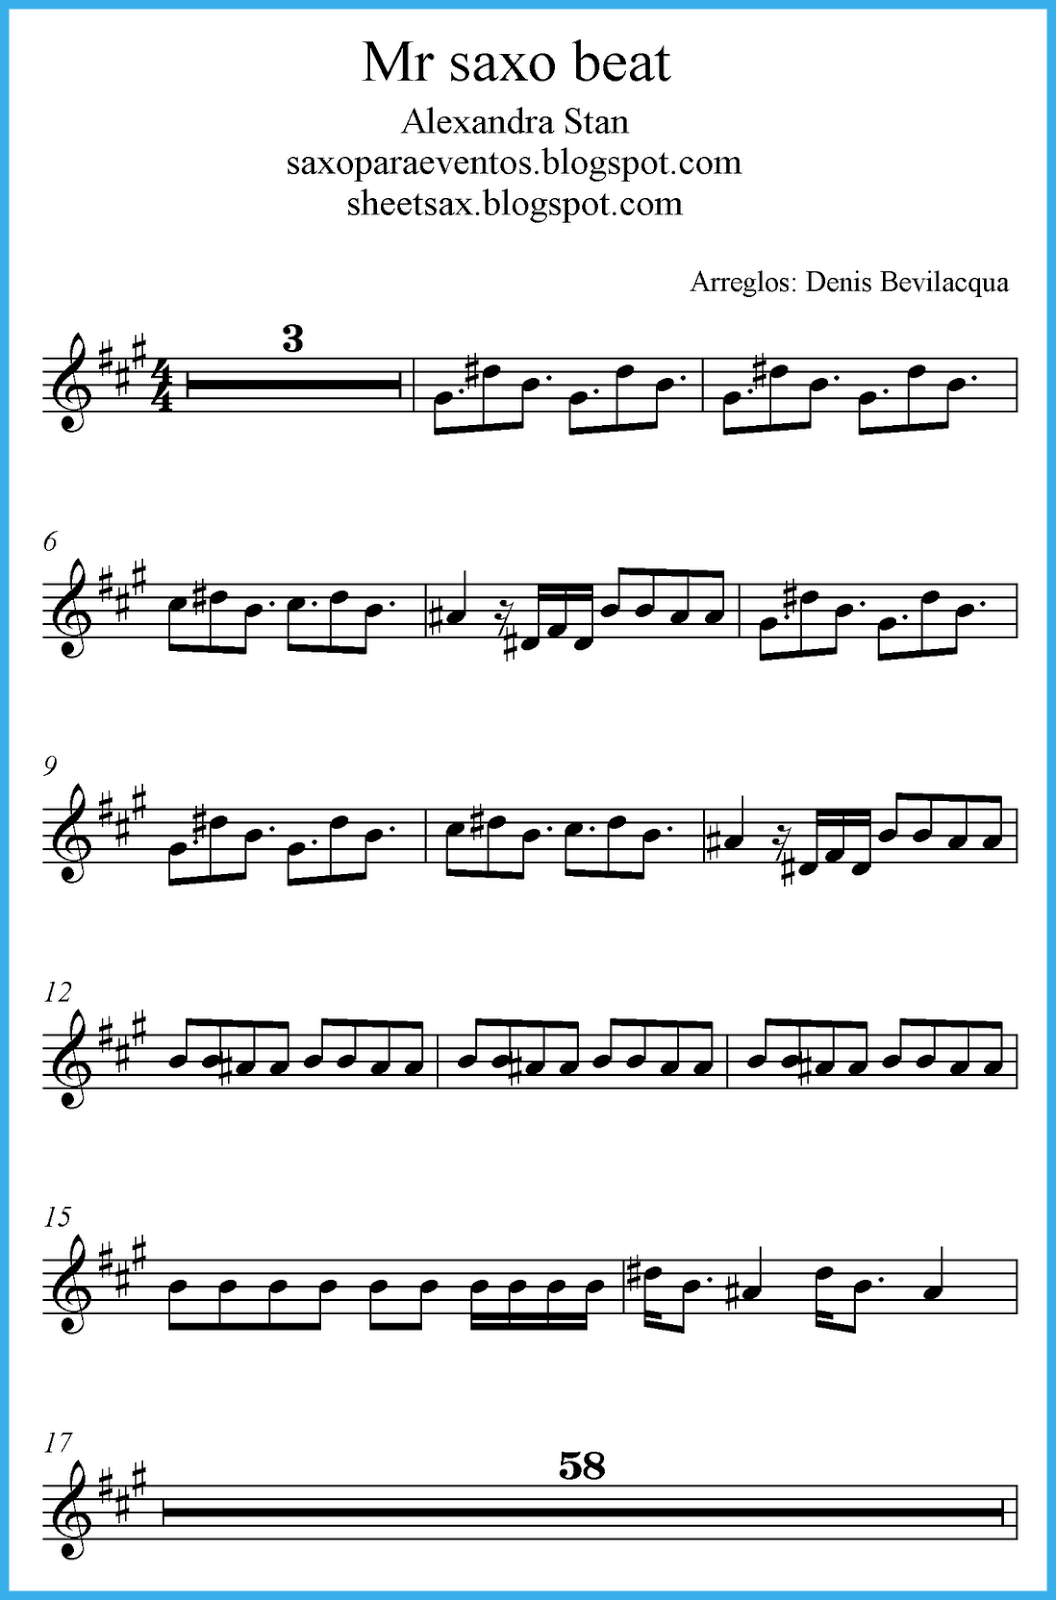 mr-saxo-beat-alexandra-stan-score-and-track-sheet-music-free